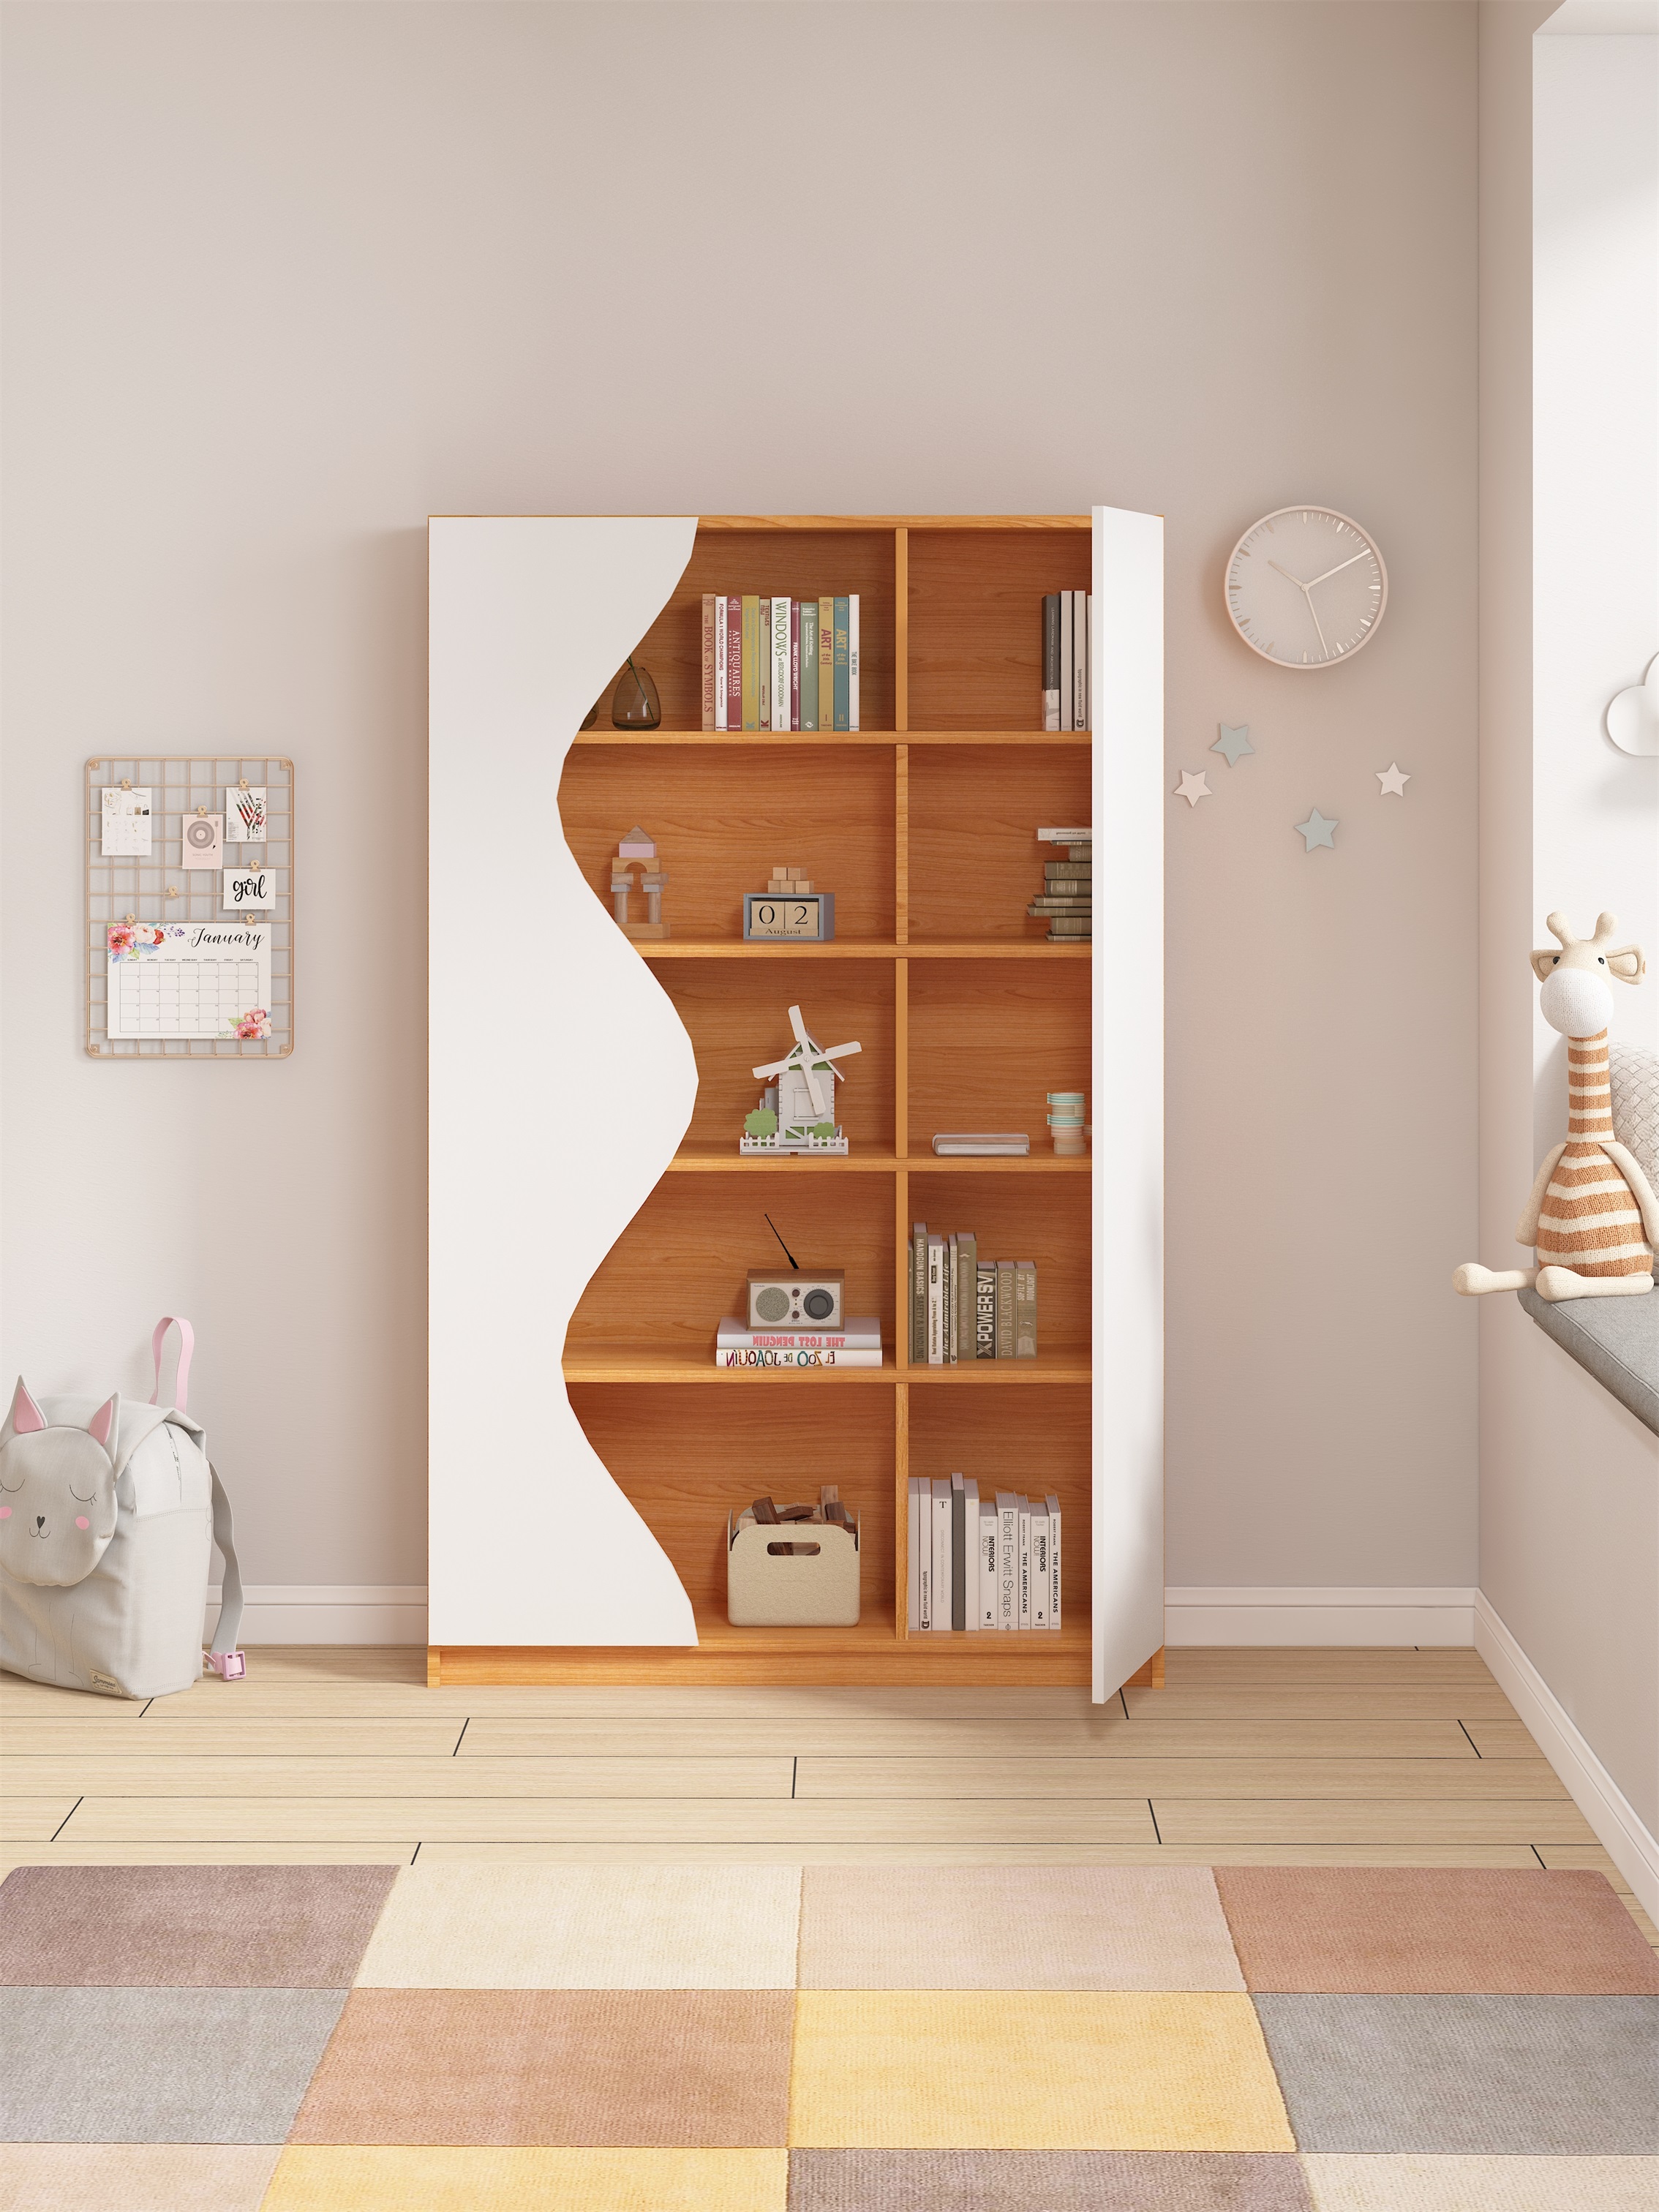 可比熊enf兒童書櫃帶門拱形儲物櫃展示櫃家用客廳書架寶寶收納櫃